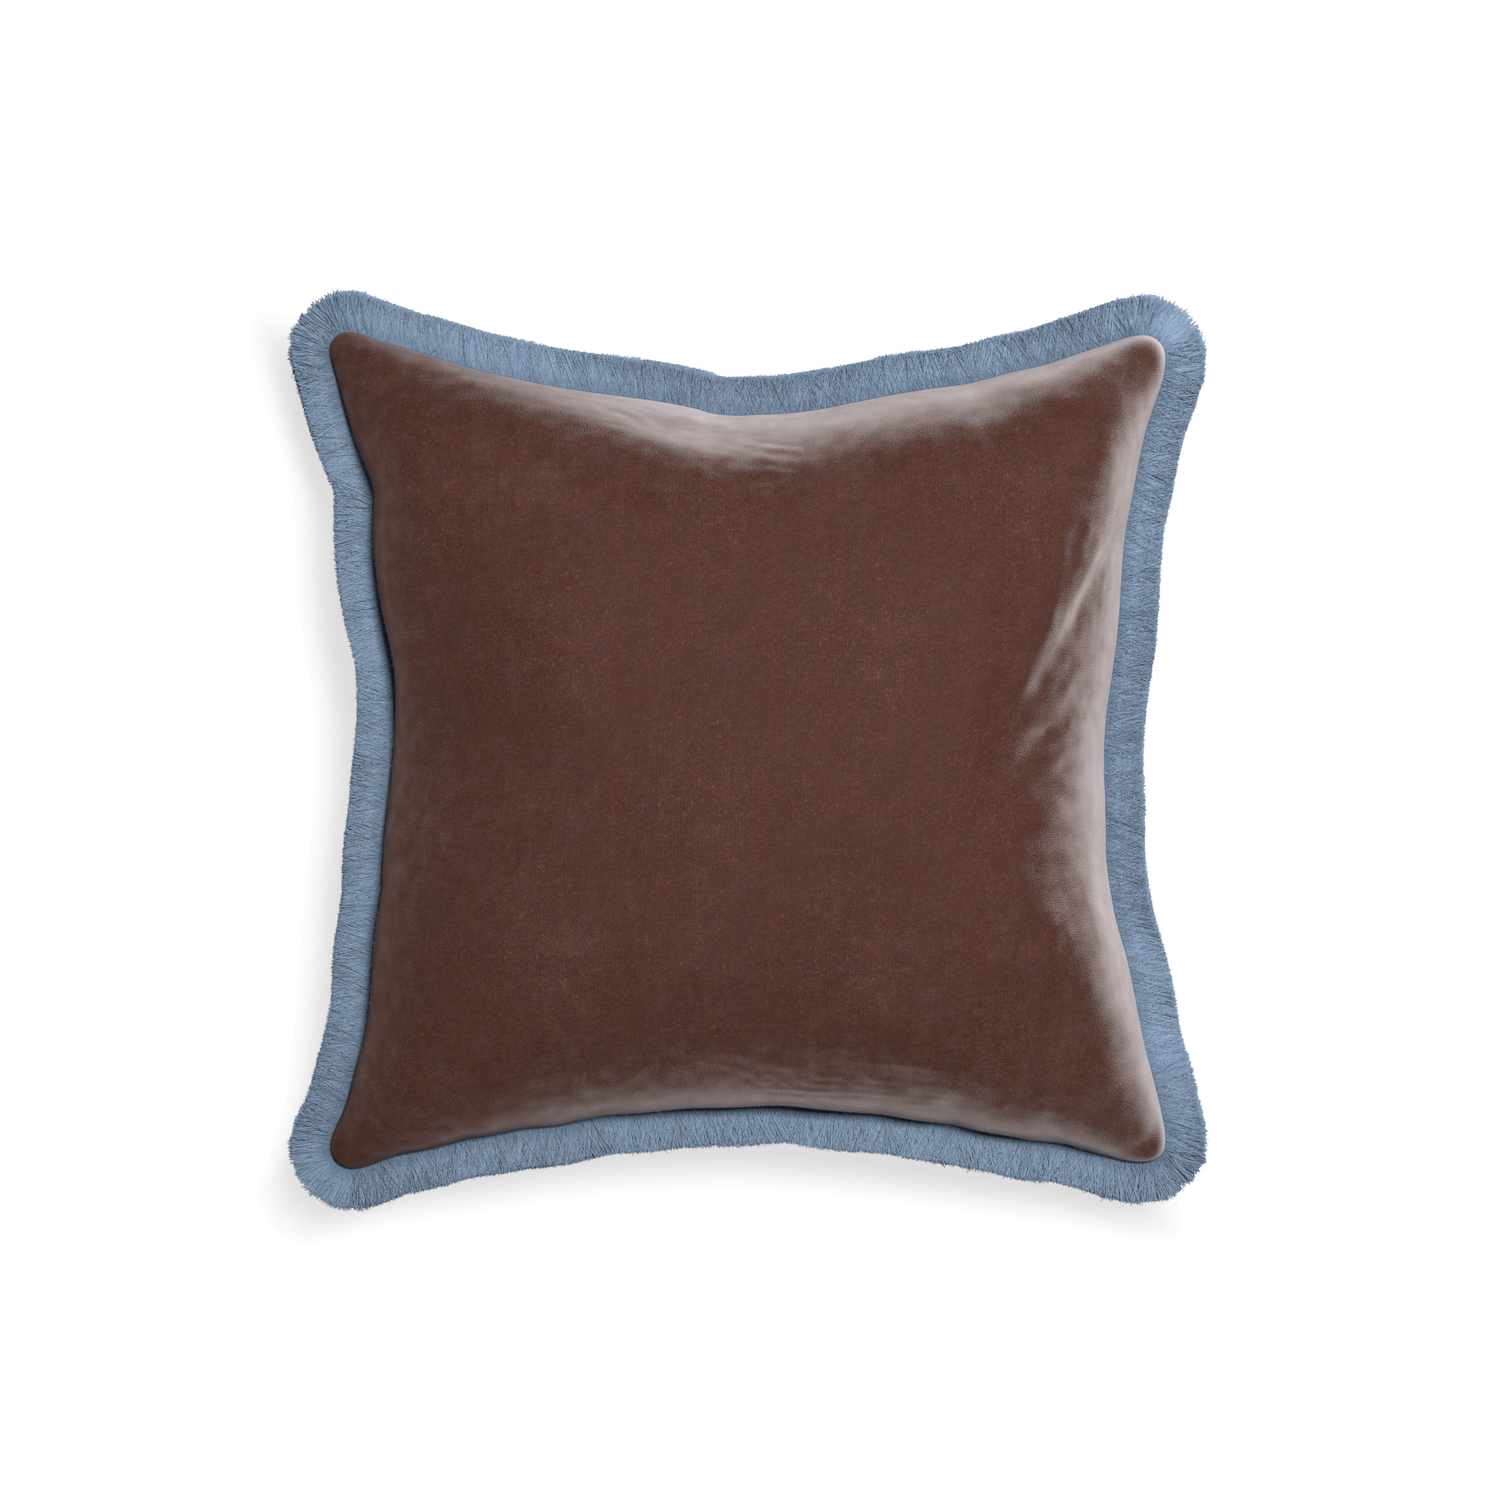 square brown velvet pillow with sky blue fringe